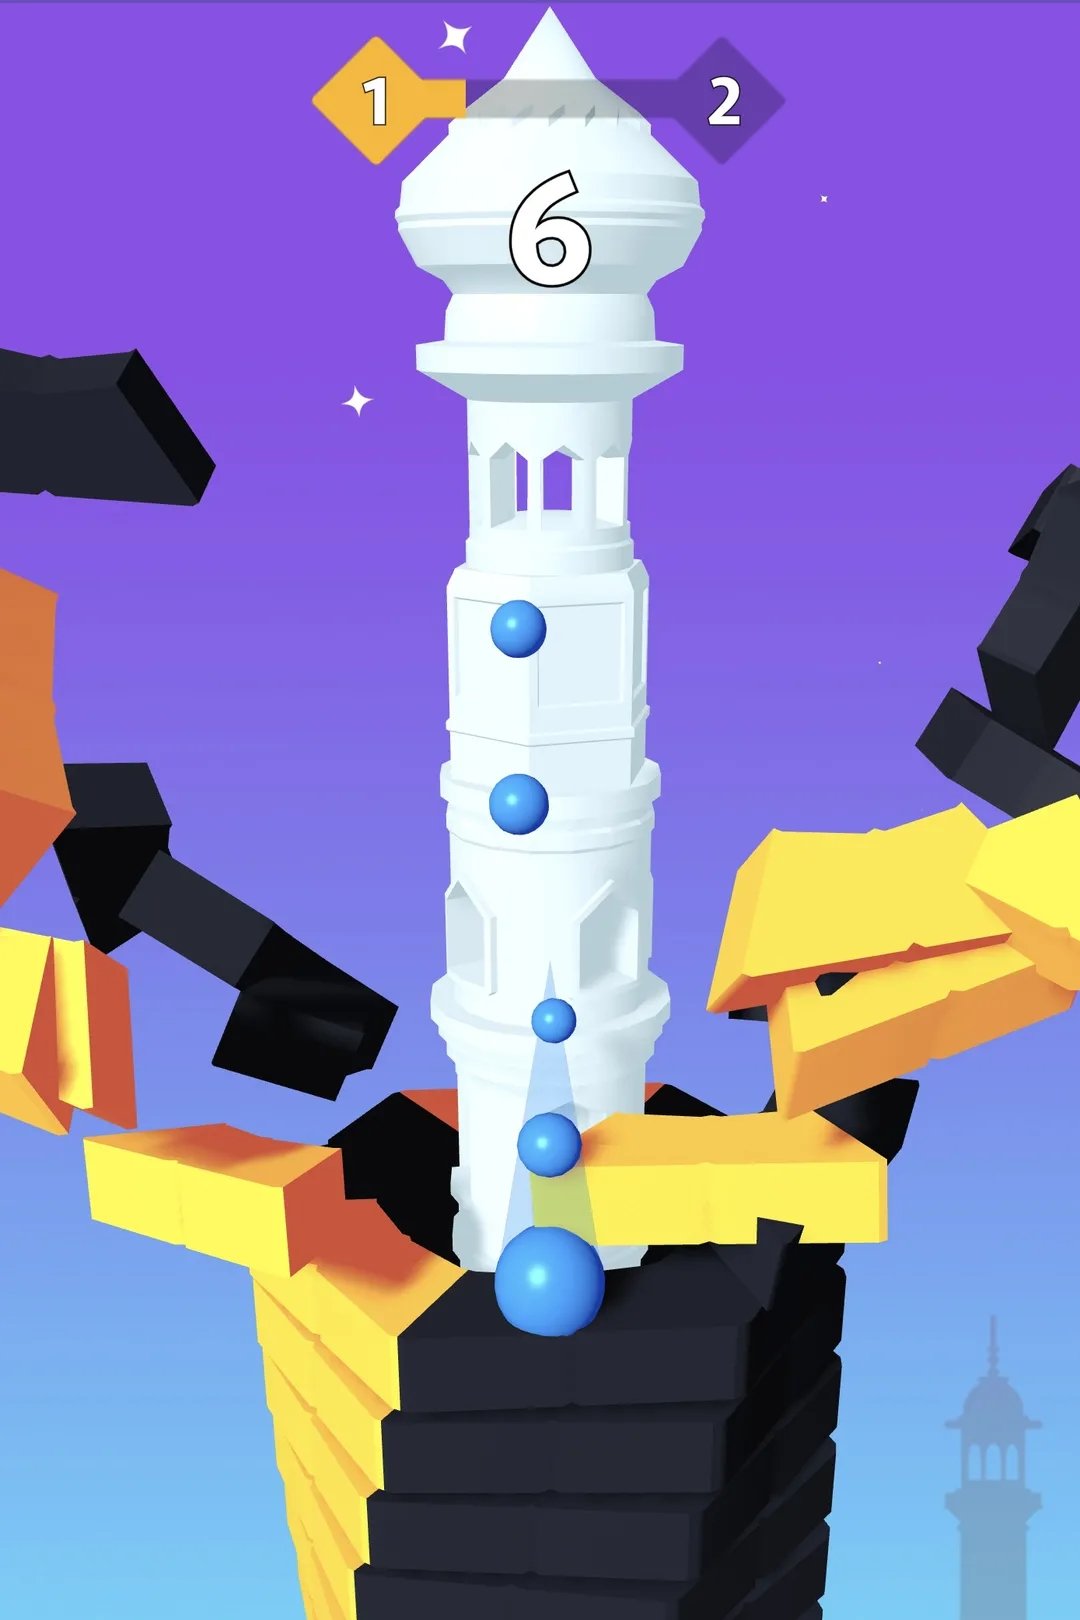 Em Stack Bounce, você precisa alcançar a base da torre quebrando o máximo de pisos em sequência.